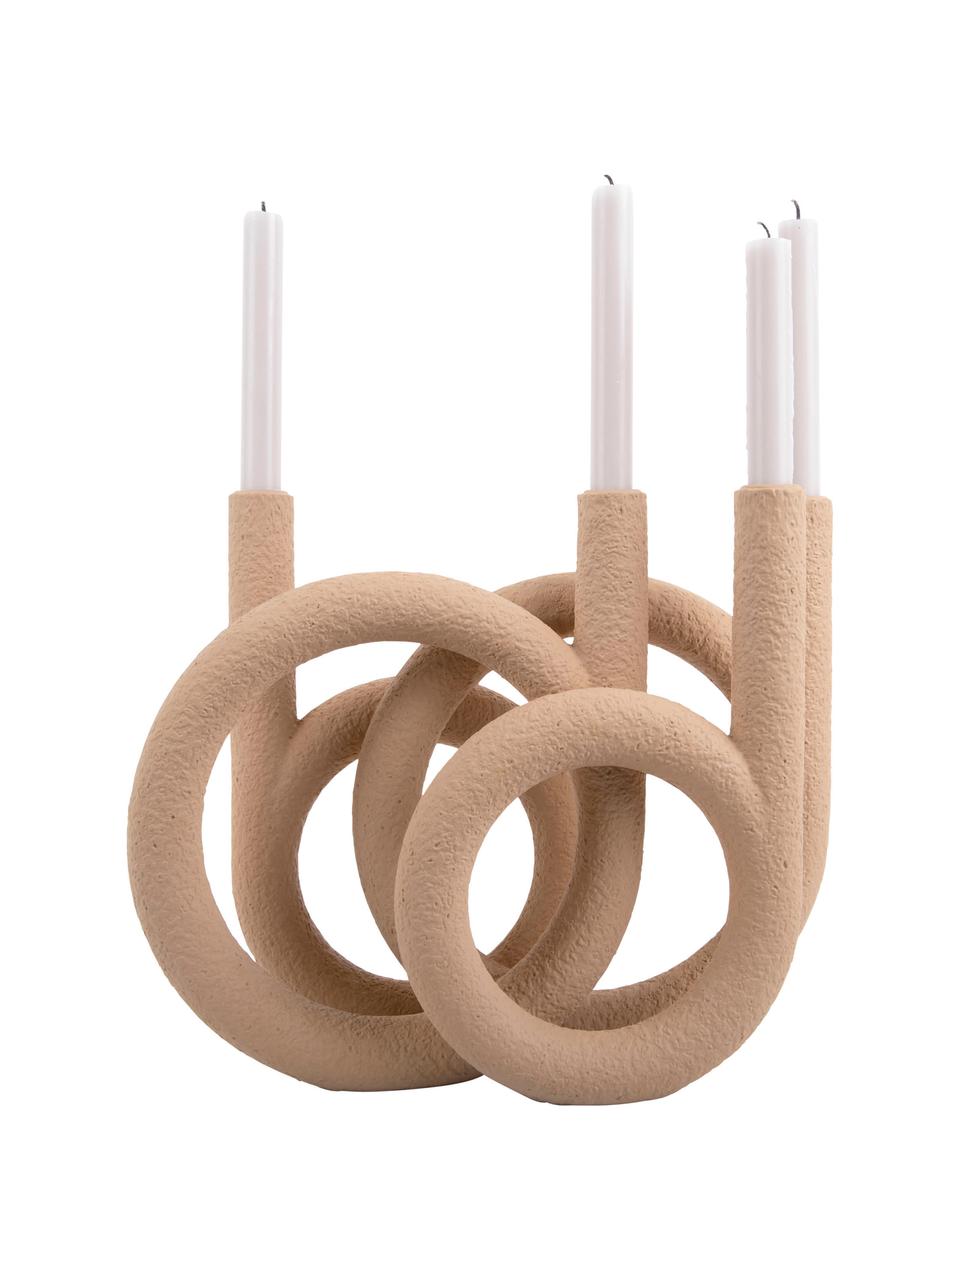 Kerzenhalter Ring in Beige, Kunststoff, Beige, 38 x 30 cm